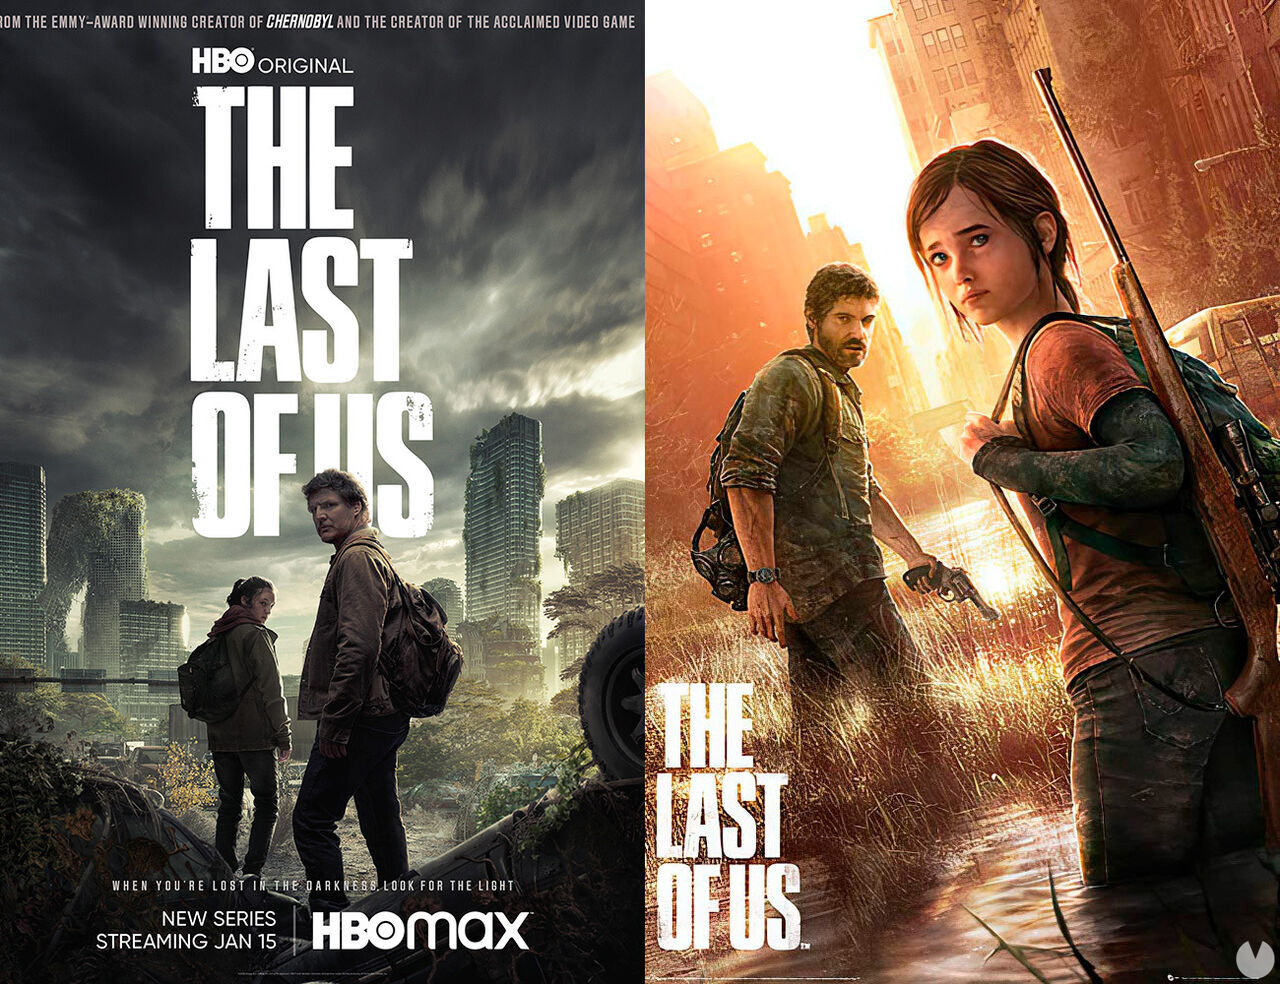 The Last of Us en HBO presenta un nuevo póster oficial que recuerda a la carátula original. Noticias en tiempo real